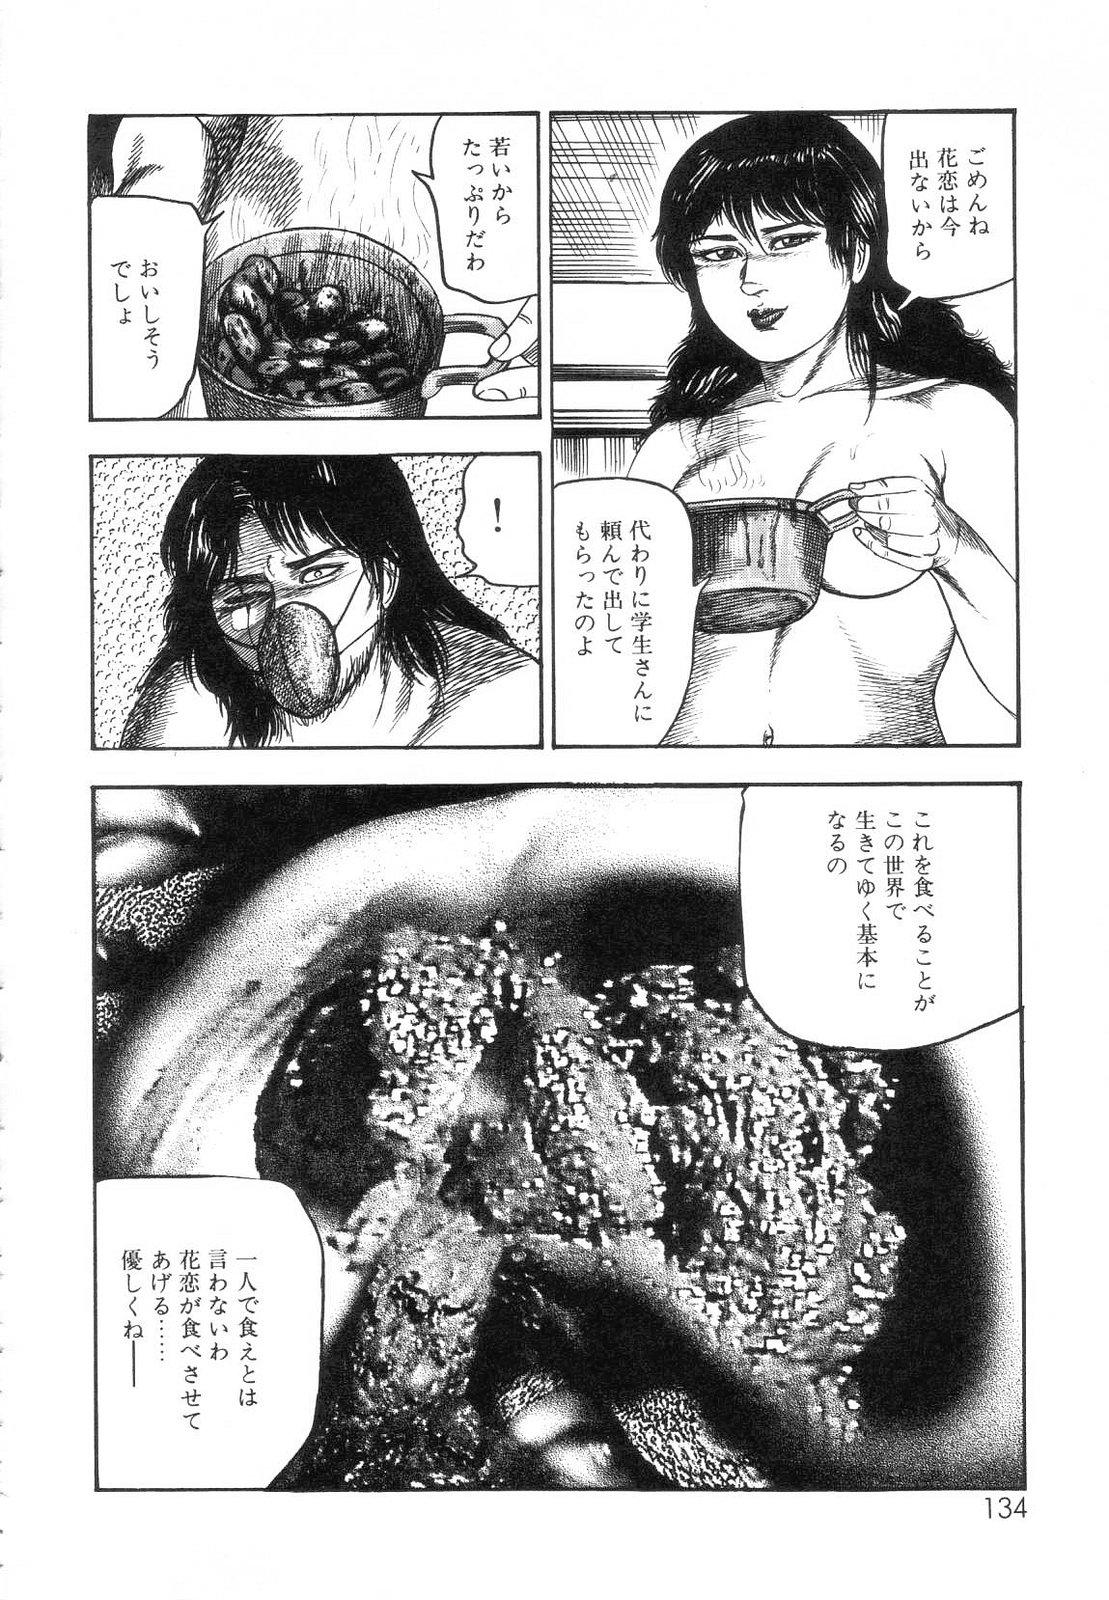 Shiro no Mokushiroku Vol. 7 - Shiiku Ningyou Erika no Shou 135